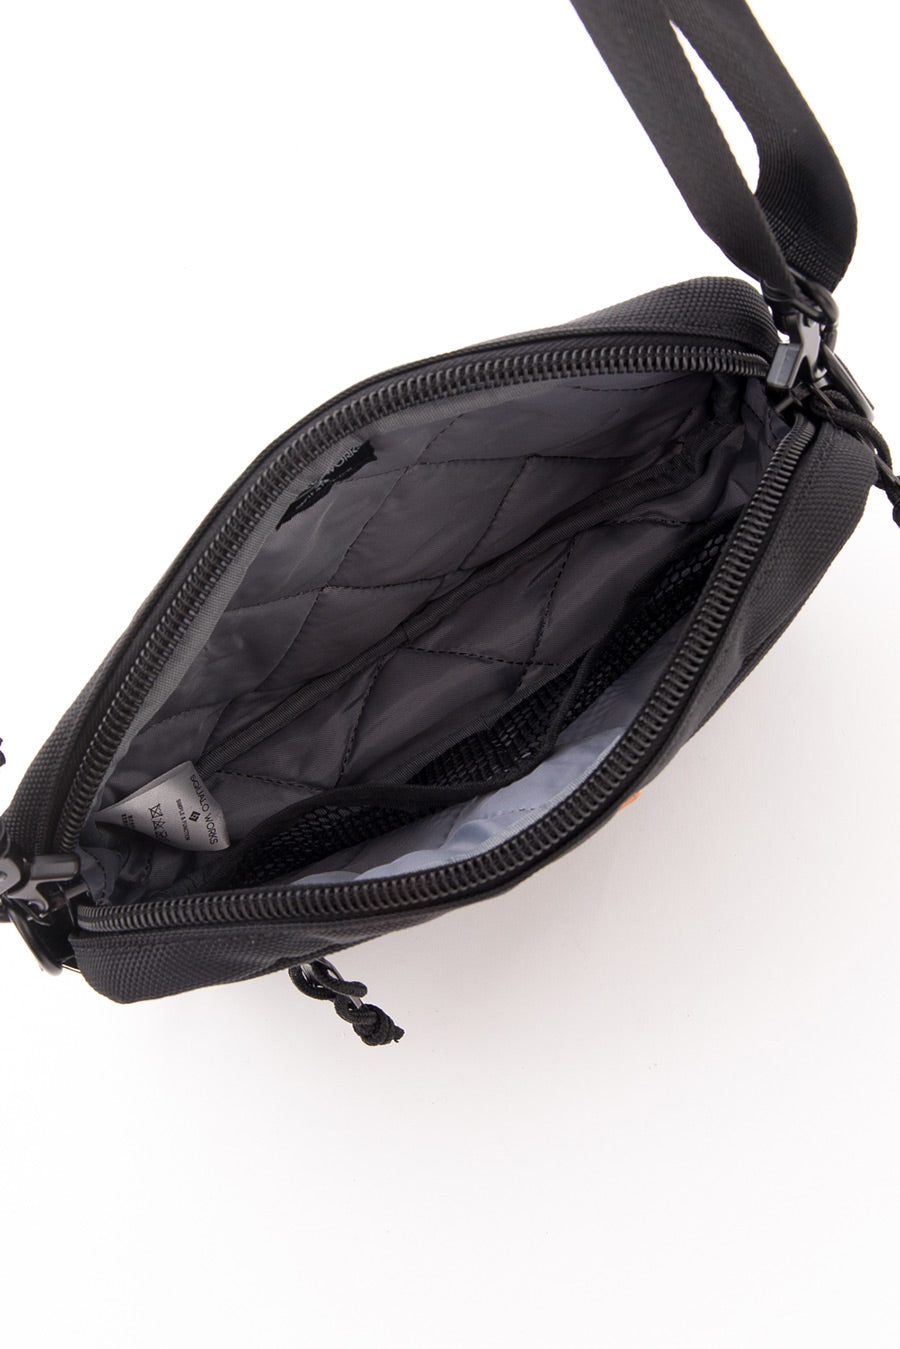 SQUALO WORKS Squalo work BELO MINI SHOULDER BAG shoulder bag bag bag